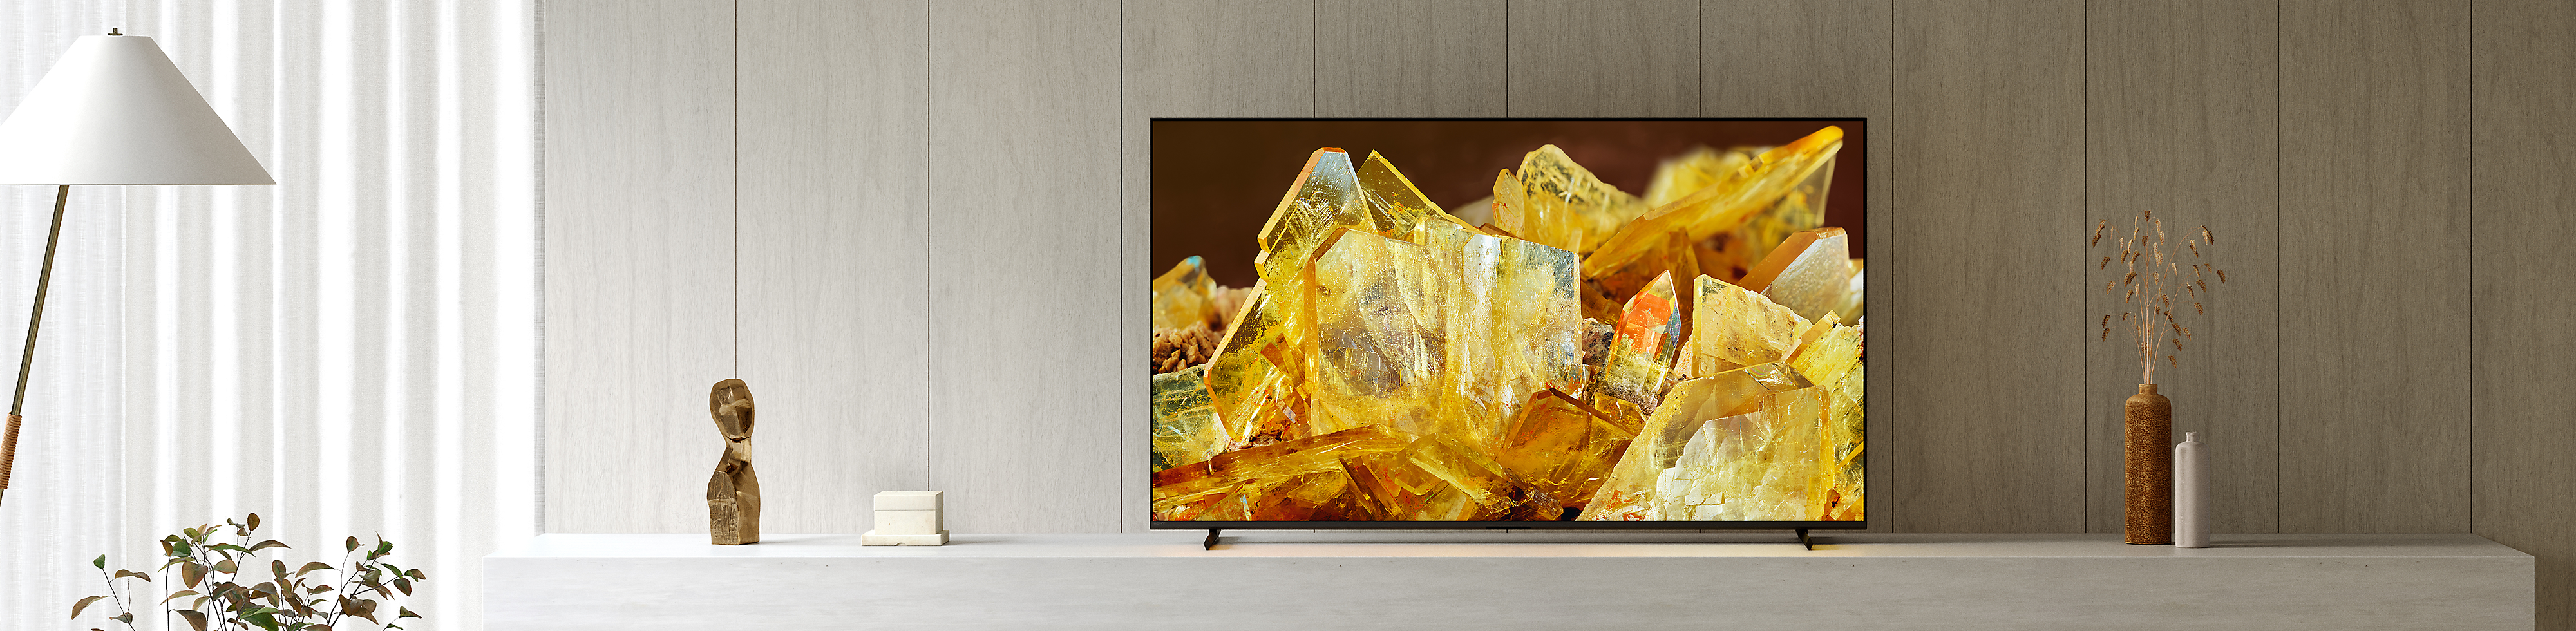 BRAVIA XR televizor u dnevnoj sobi, na zaslonu je krupni plan kristala jantarne boje